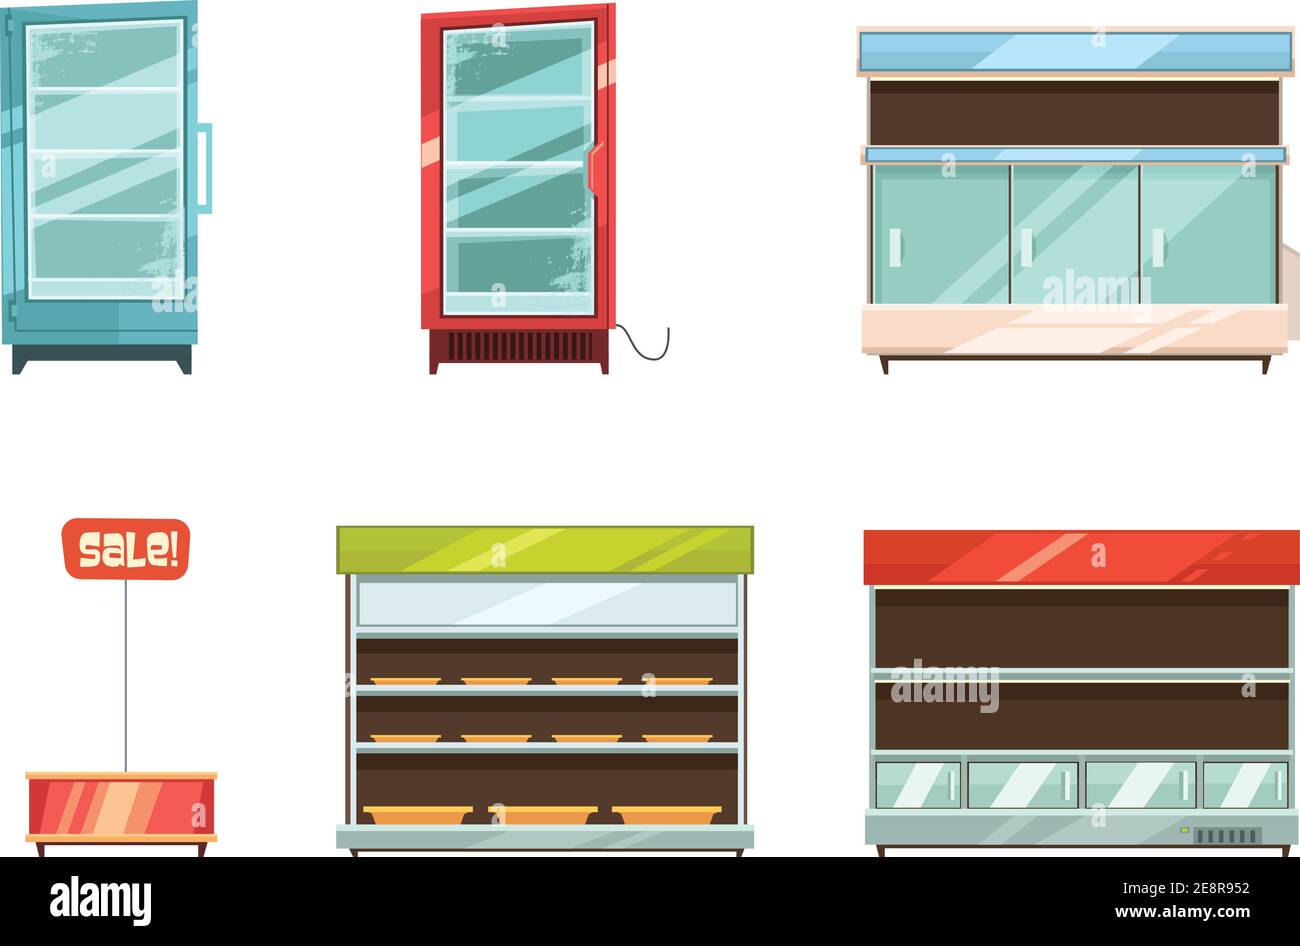 Les articles de supermarché et d'épicerie présentent des étagères pour réfrigérateur et des articles vendus dans les allées illustration vectorielle isolée de la collection d'icônes de dessins animés rétro Illustration de Vecteur